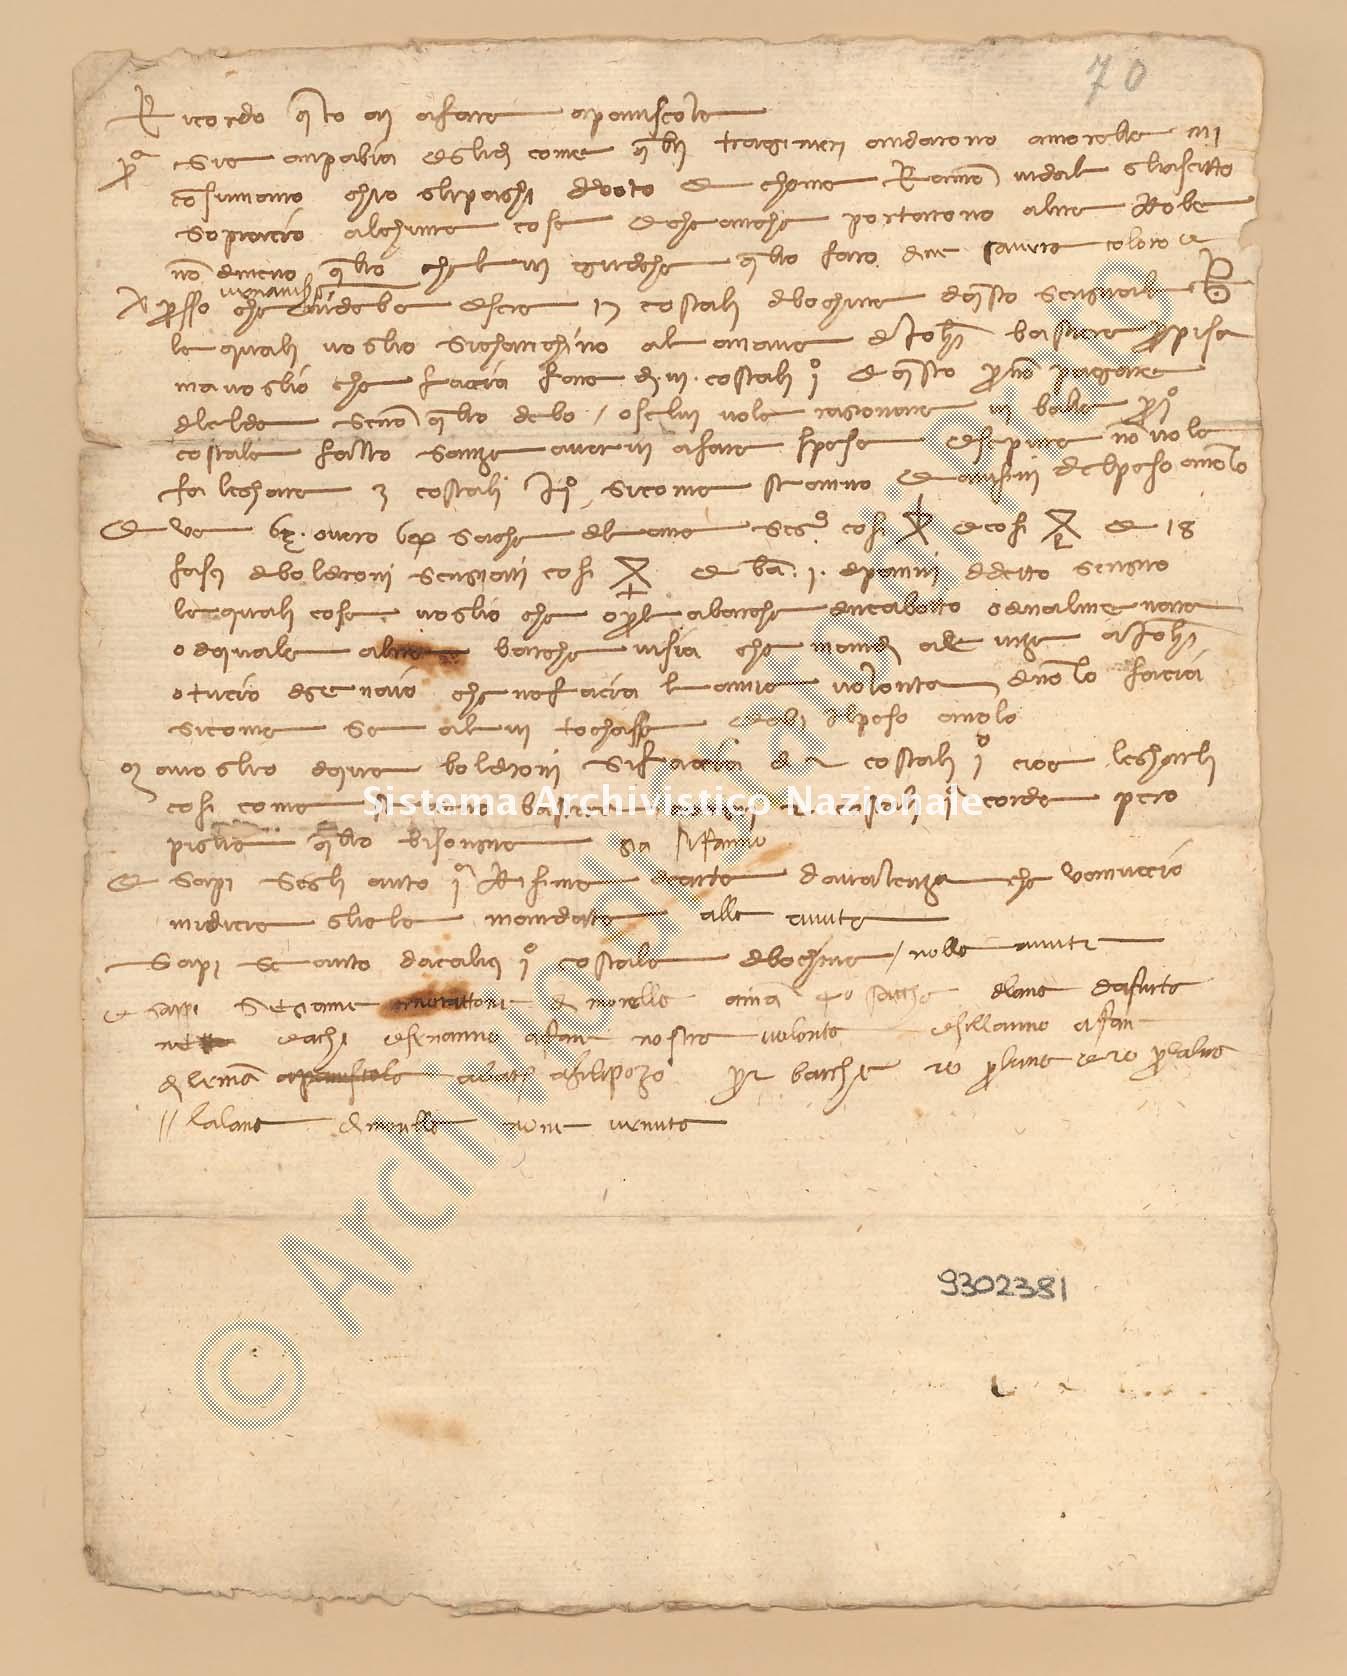 Archivio di Stato di Prato, Fondo Datini, Carteggio specializzato, Ricordanze, Busta 1167 (busta 1167, codice 9302381)